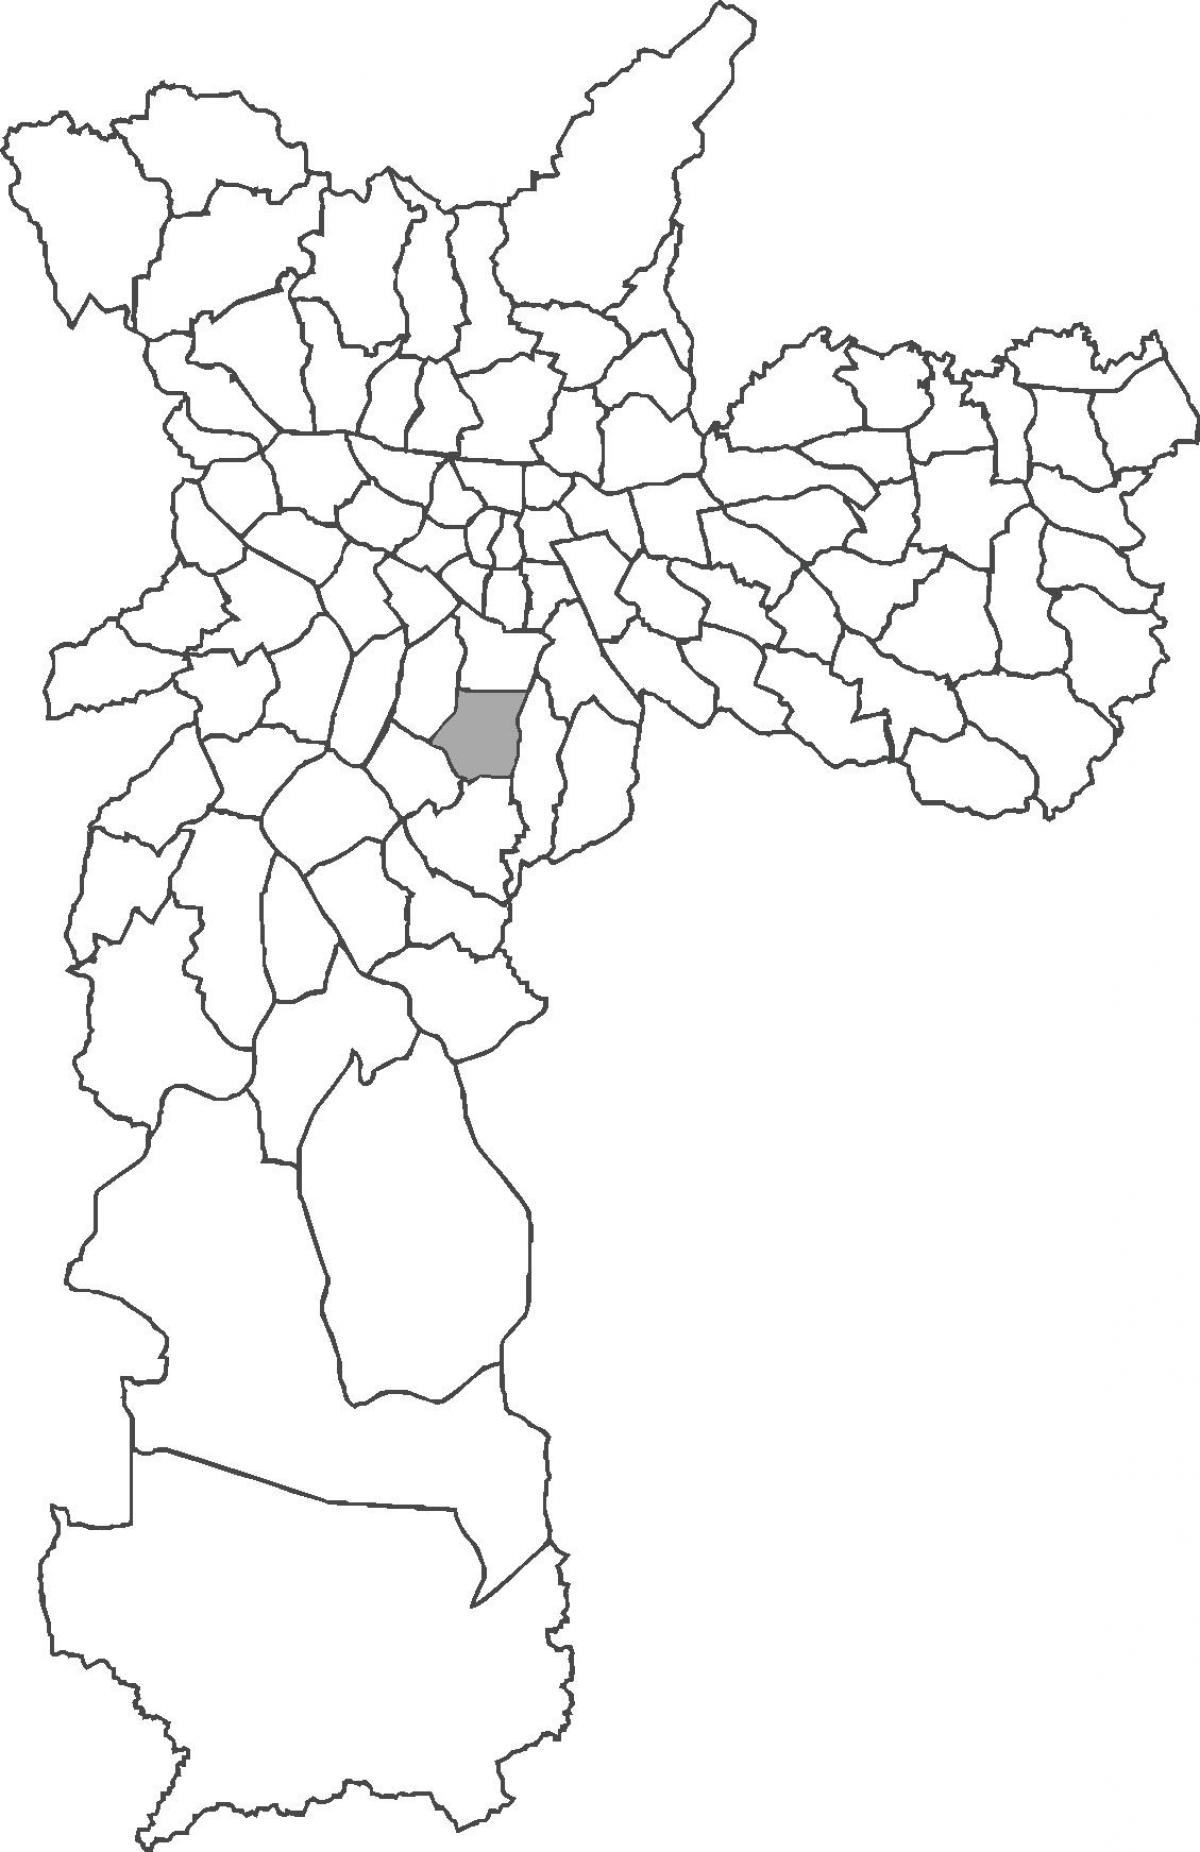 মানচিত্র Saúde জেলা